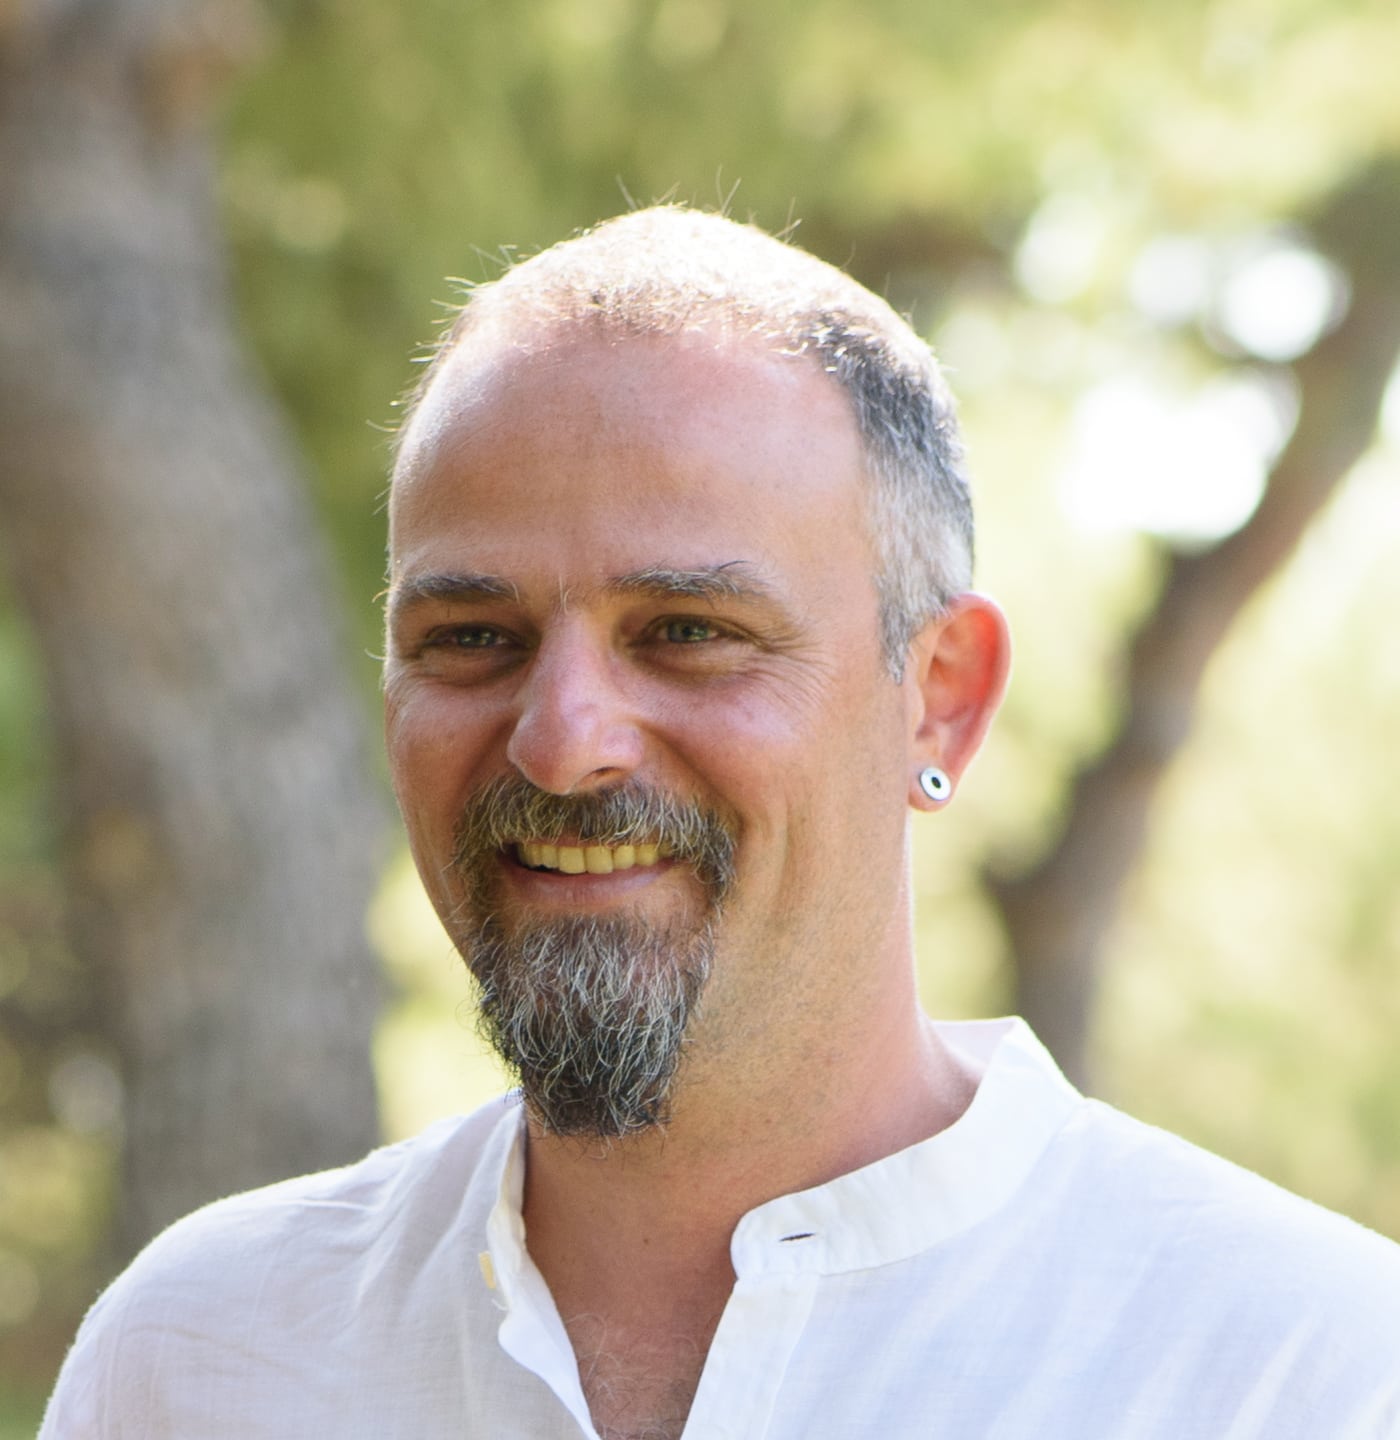 Konstantinos Mavrokefalos - founder and CEO of Solomondesigns.co.uk